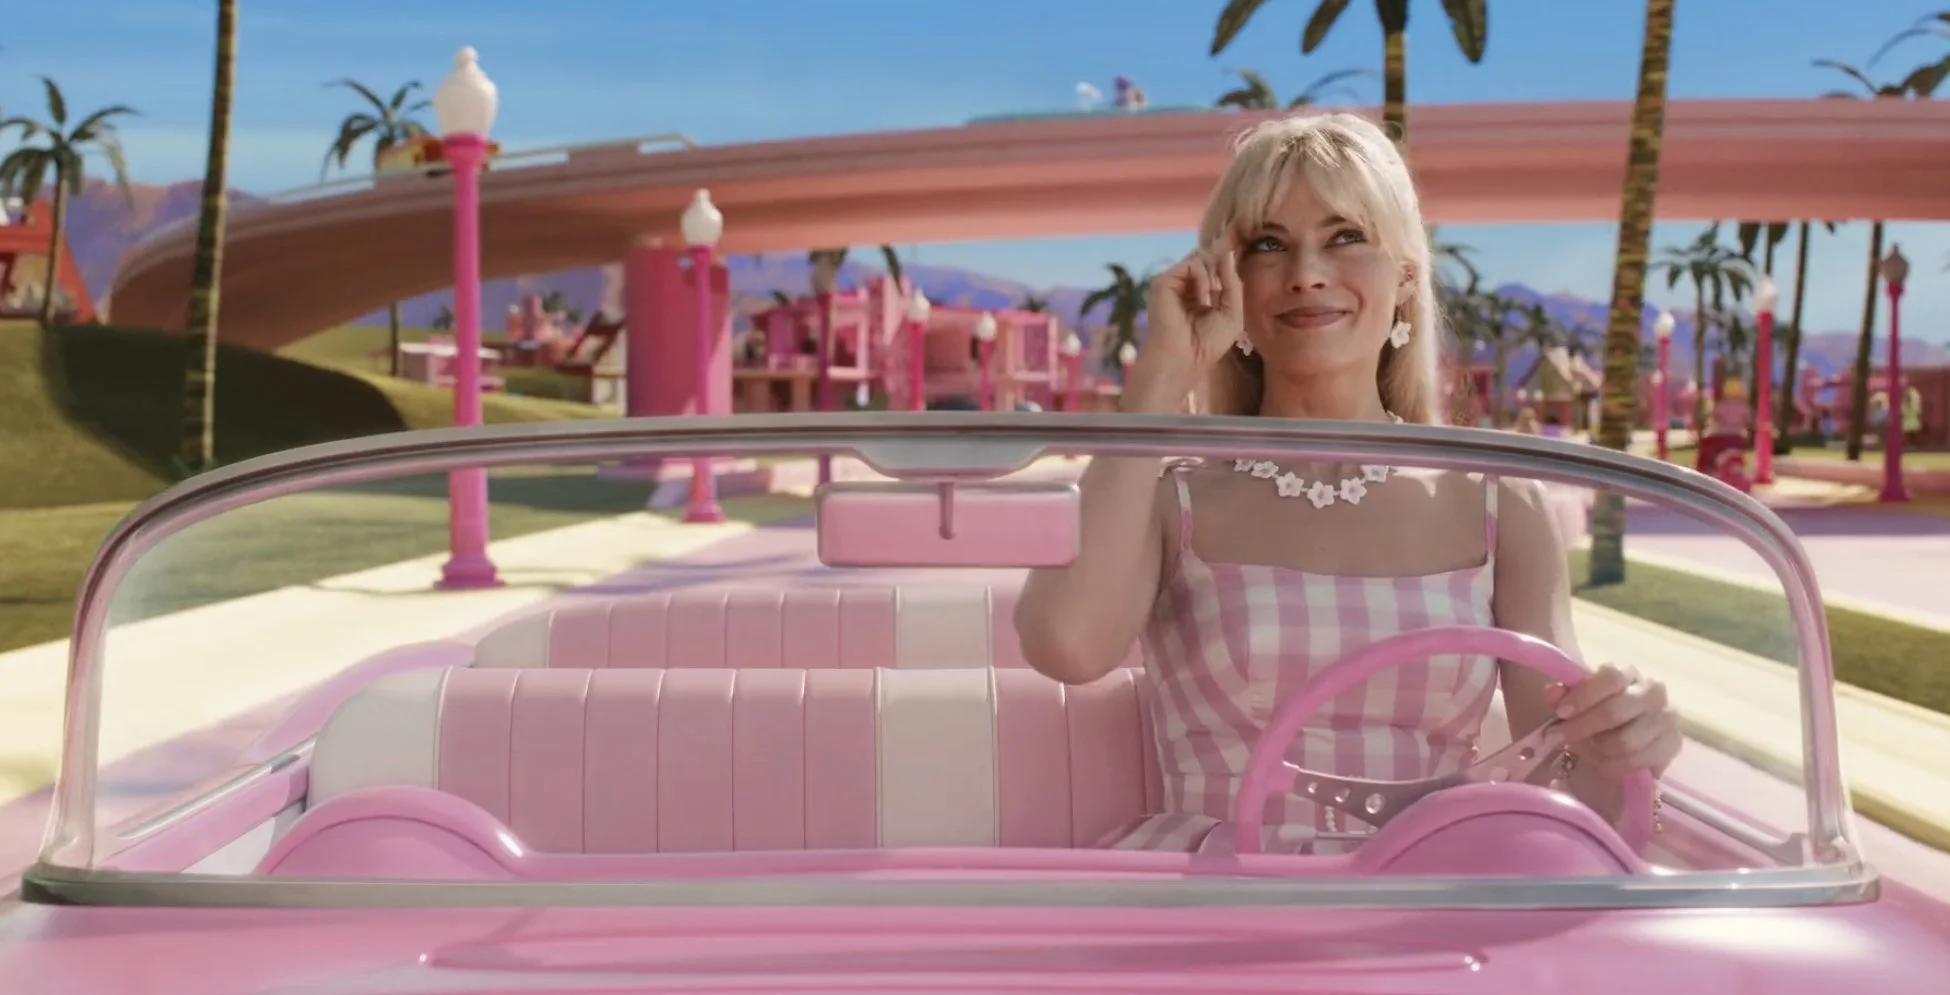 Filme da Barbie ganha primeiro teaser cheio de referências